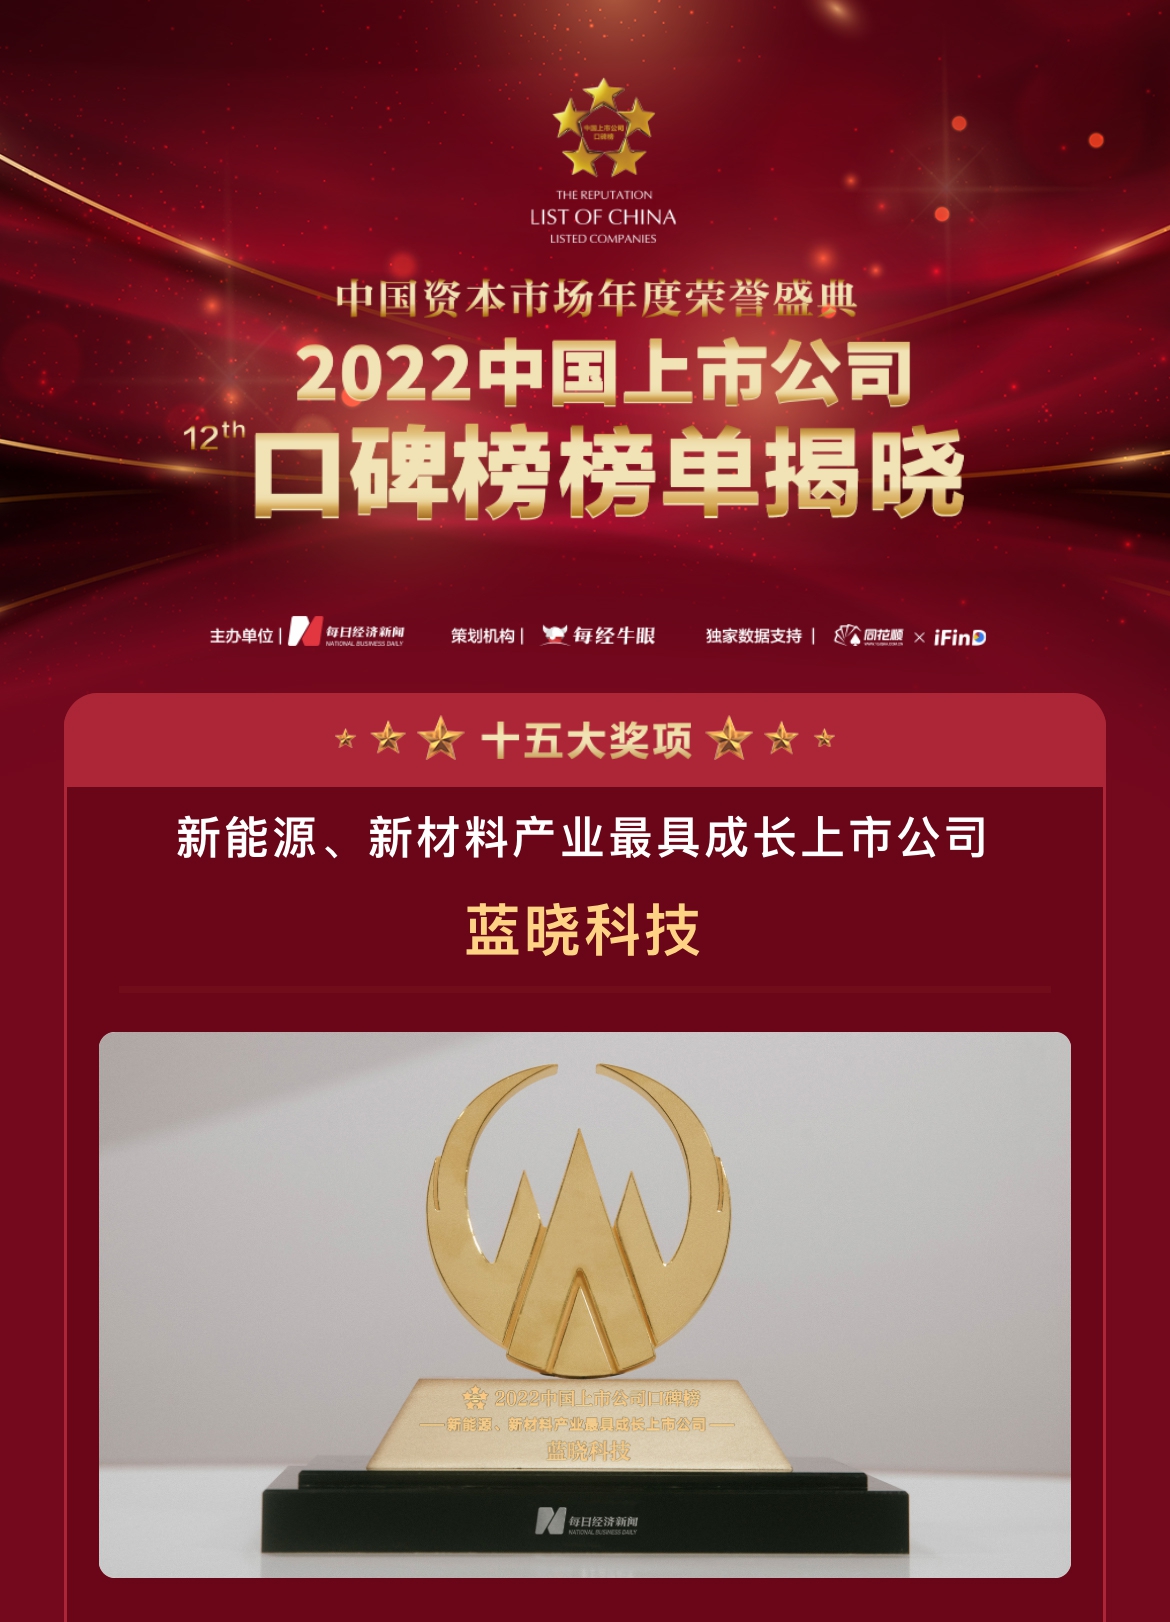 非凡彩票app荣膺“第十二届中国上市公司口碑榜”两项大奖